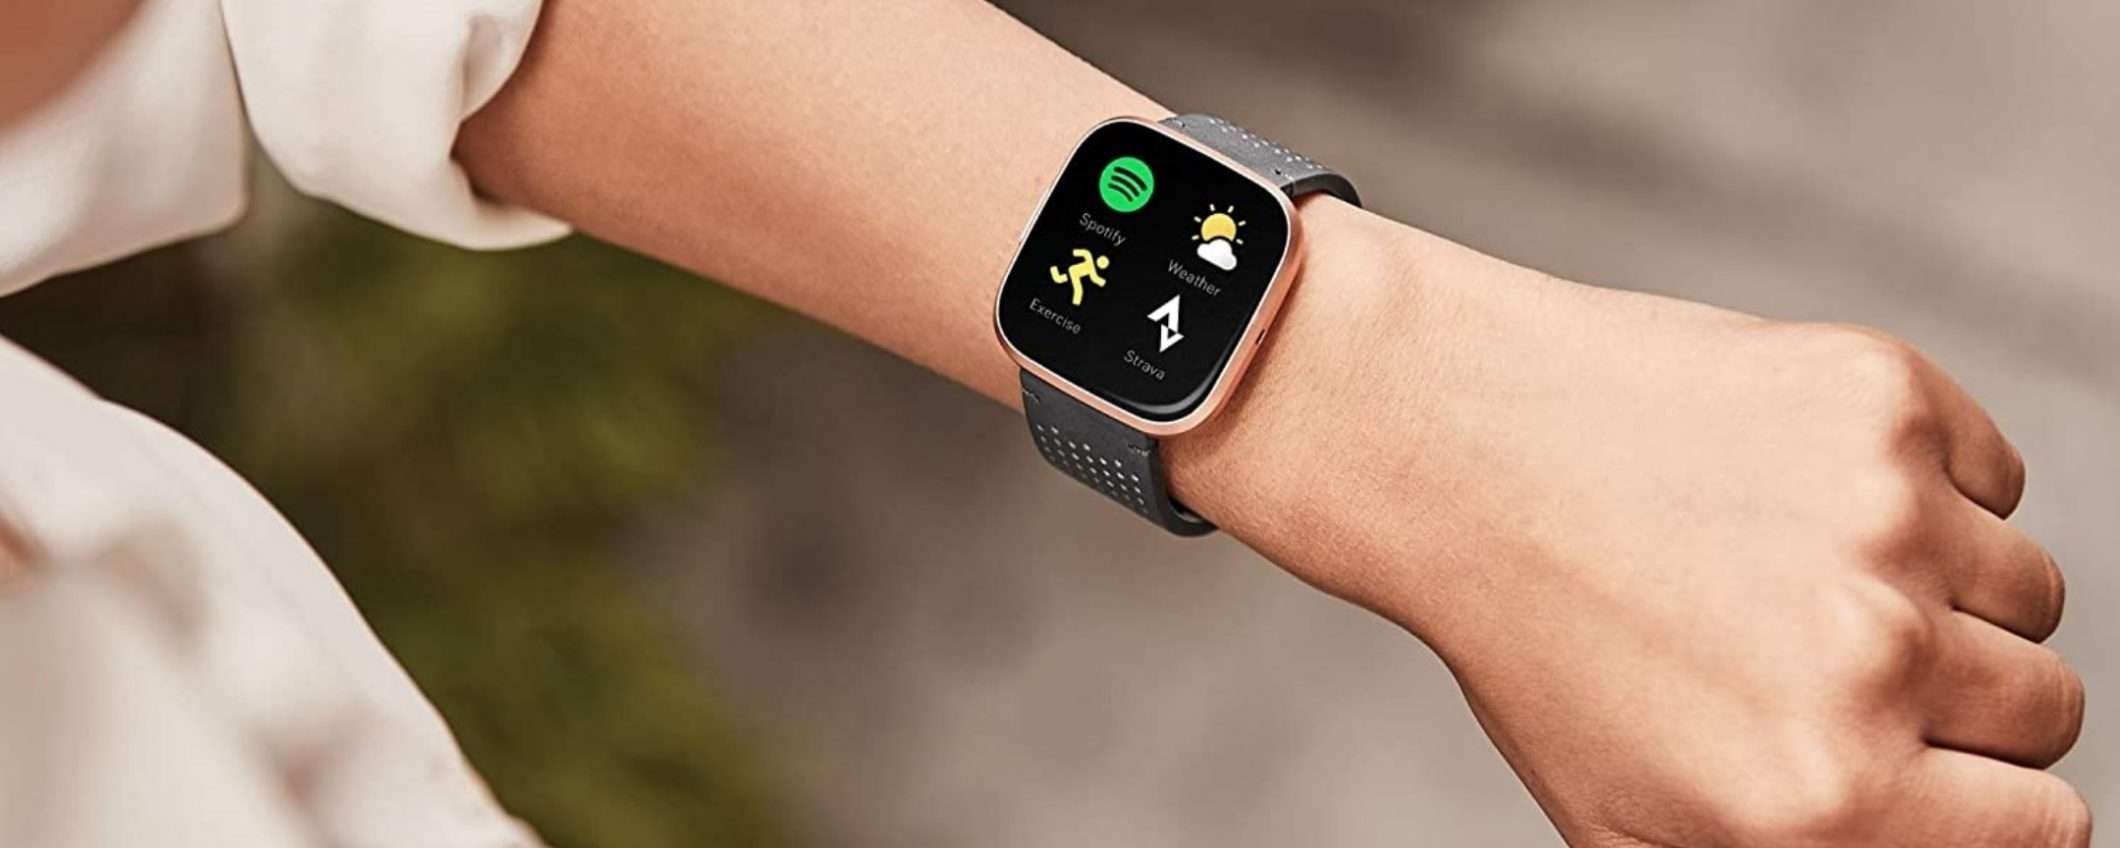 Smartwatch, sportwatch e Alexa nell'edizione esclusiva Amazon: Fitbit Versa 2 in super sconto